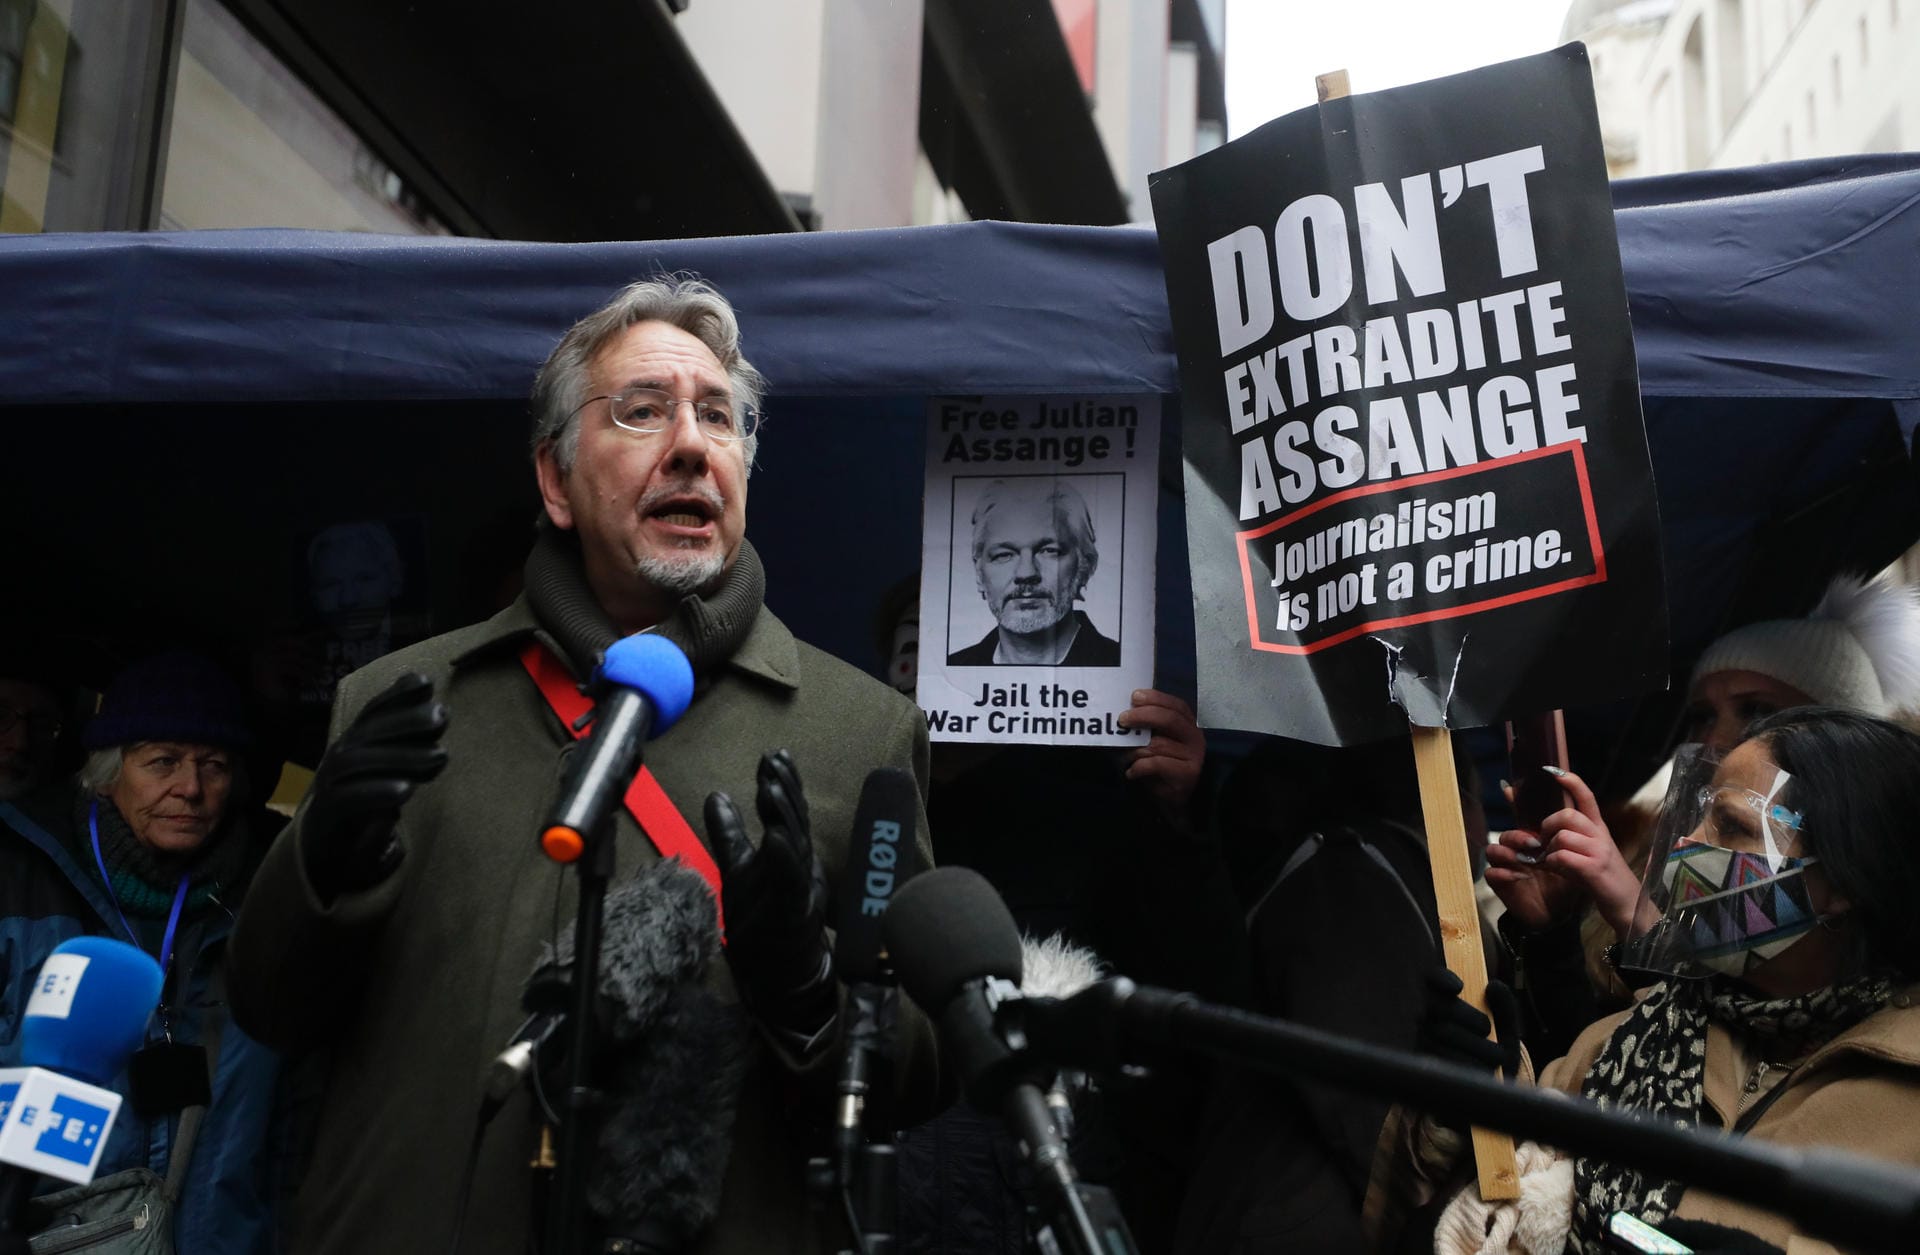 Erleichterung für Assanges Unterstützer: Der Polit-Aktivist John Rees spricht vor dem Gebäude des Strafgerichtshofs in London.